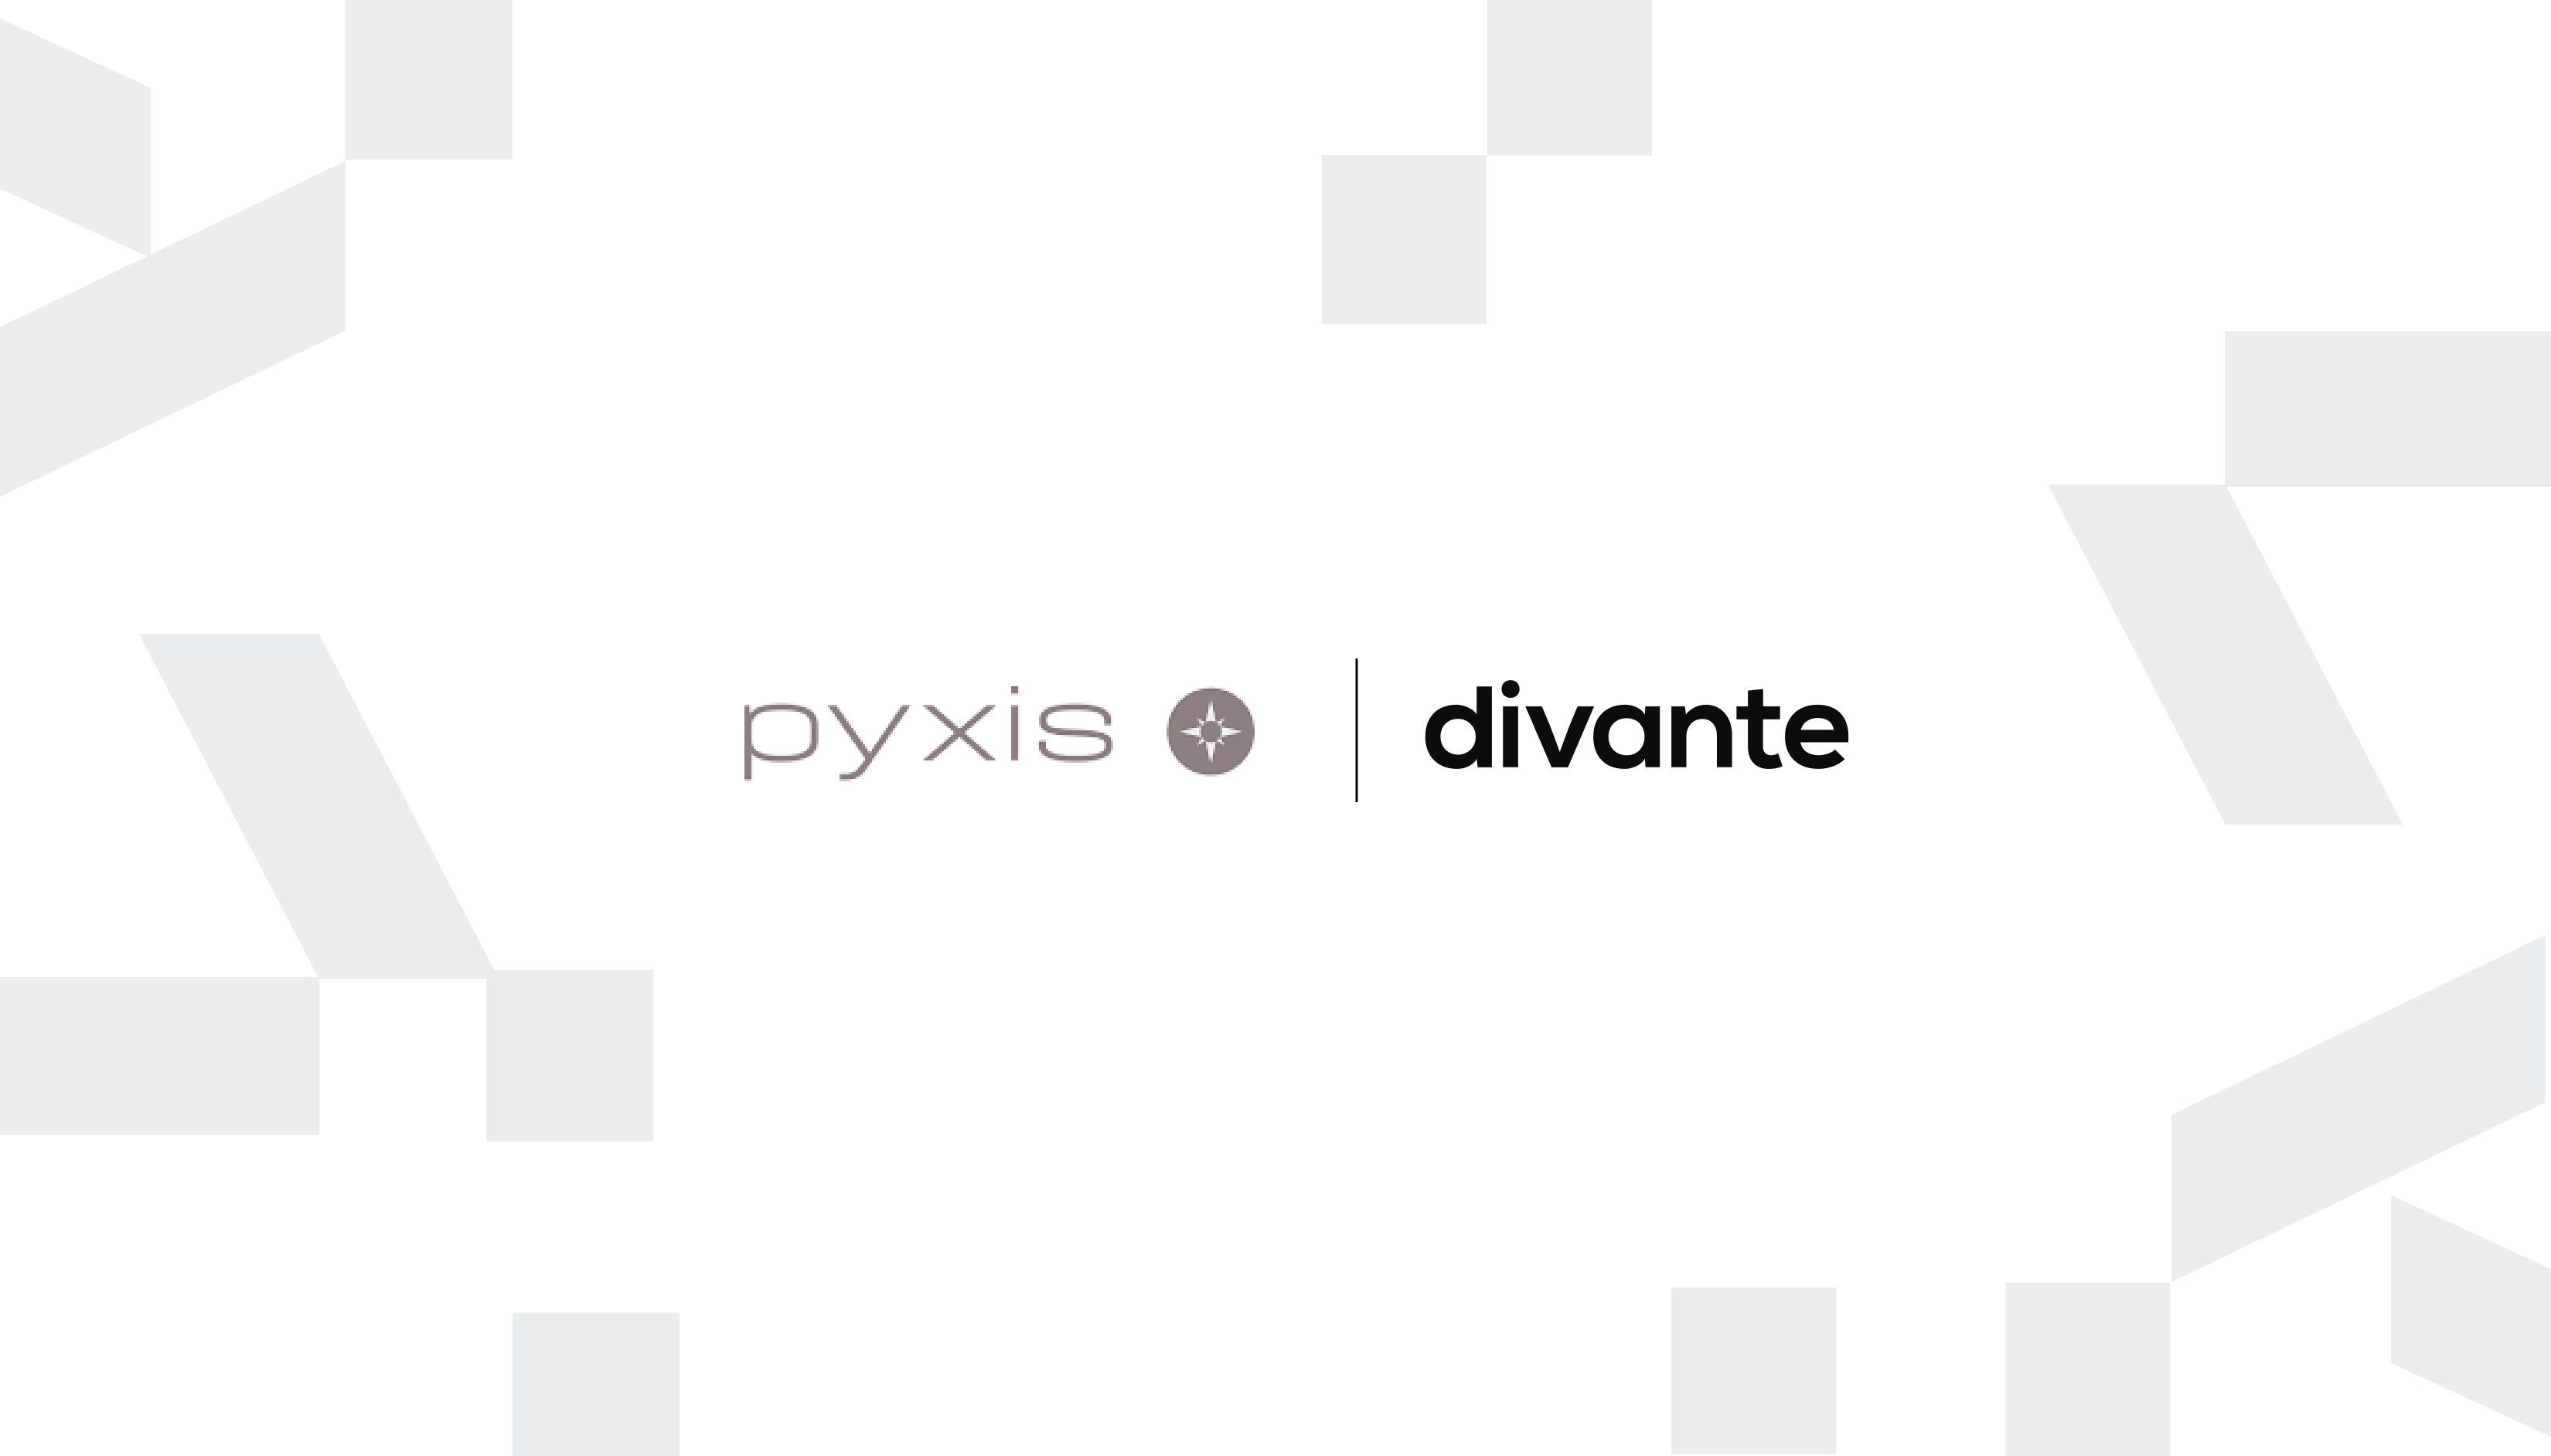 Pyxis CX y Divante unen sus fuerzas para acelerar la innovación digital